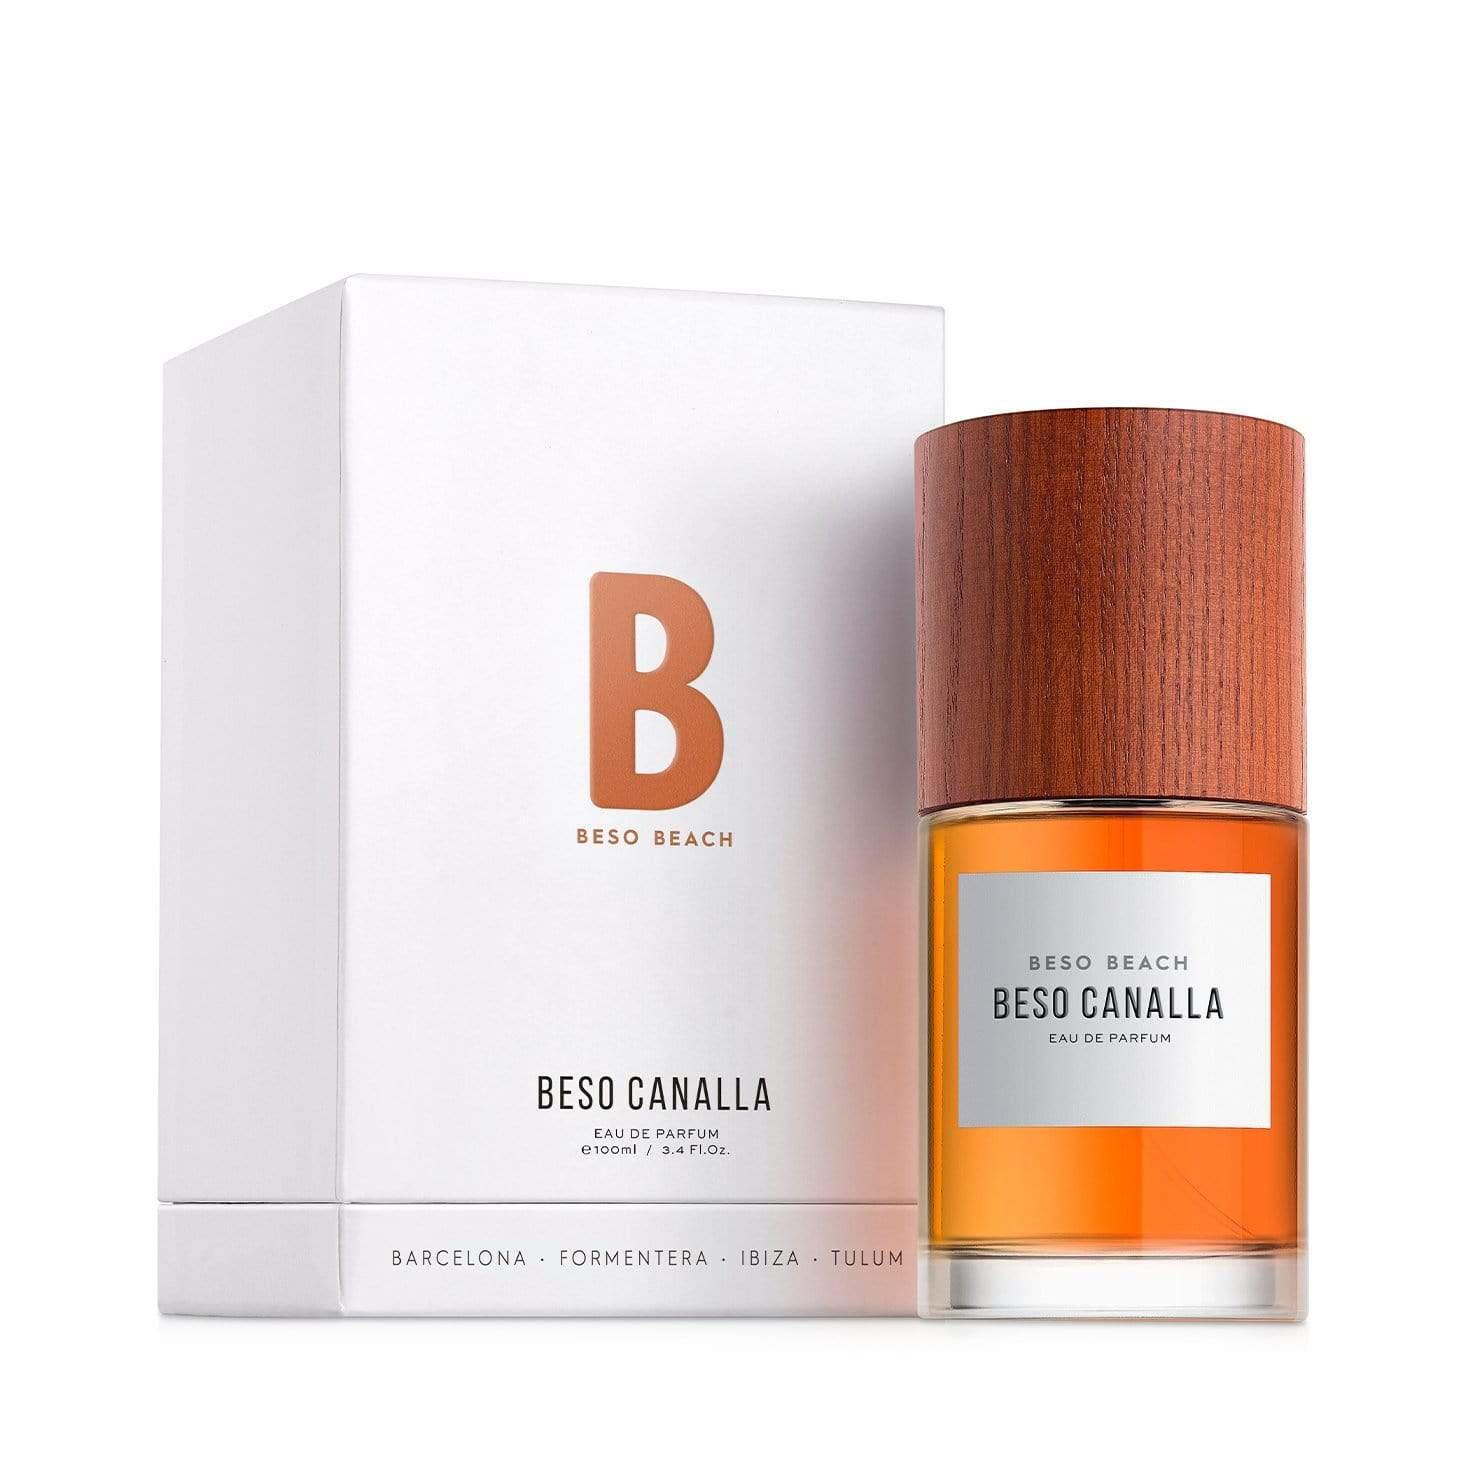 Beso Canalla Eau de Parfum - Men's Fragrance at Menzclub